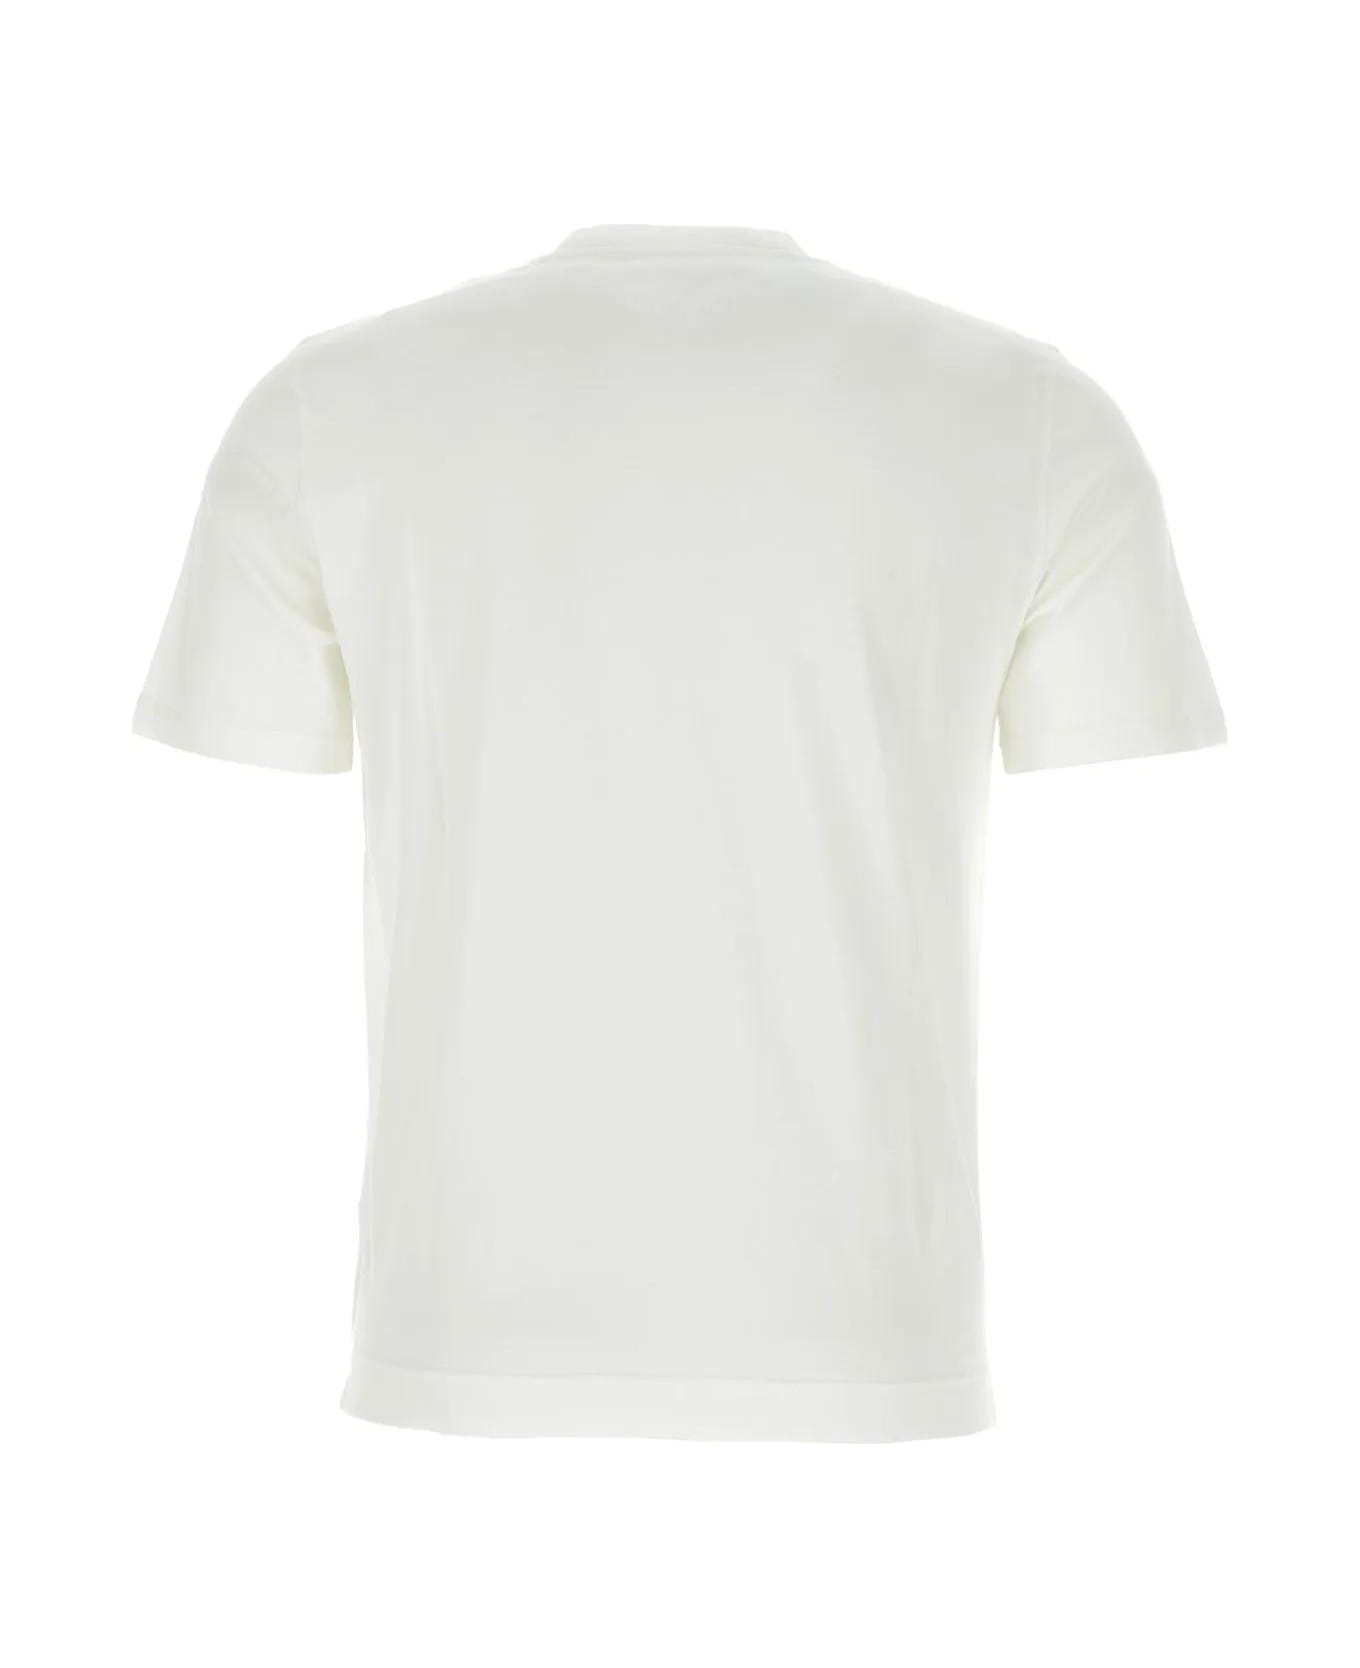 Fedeli White Cotton T-shirt - Bianco シャツ